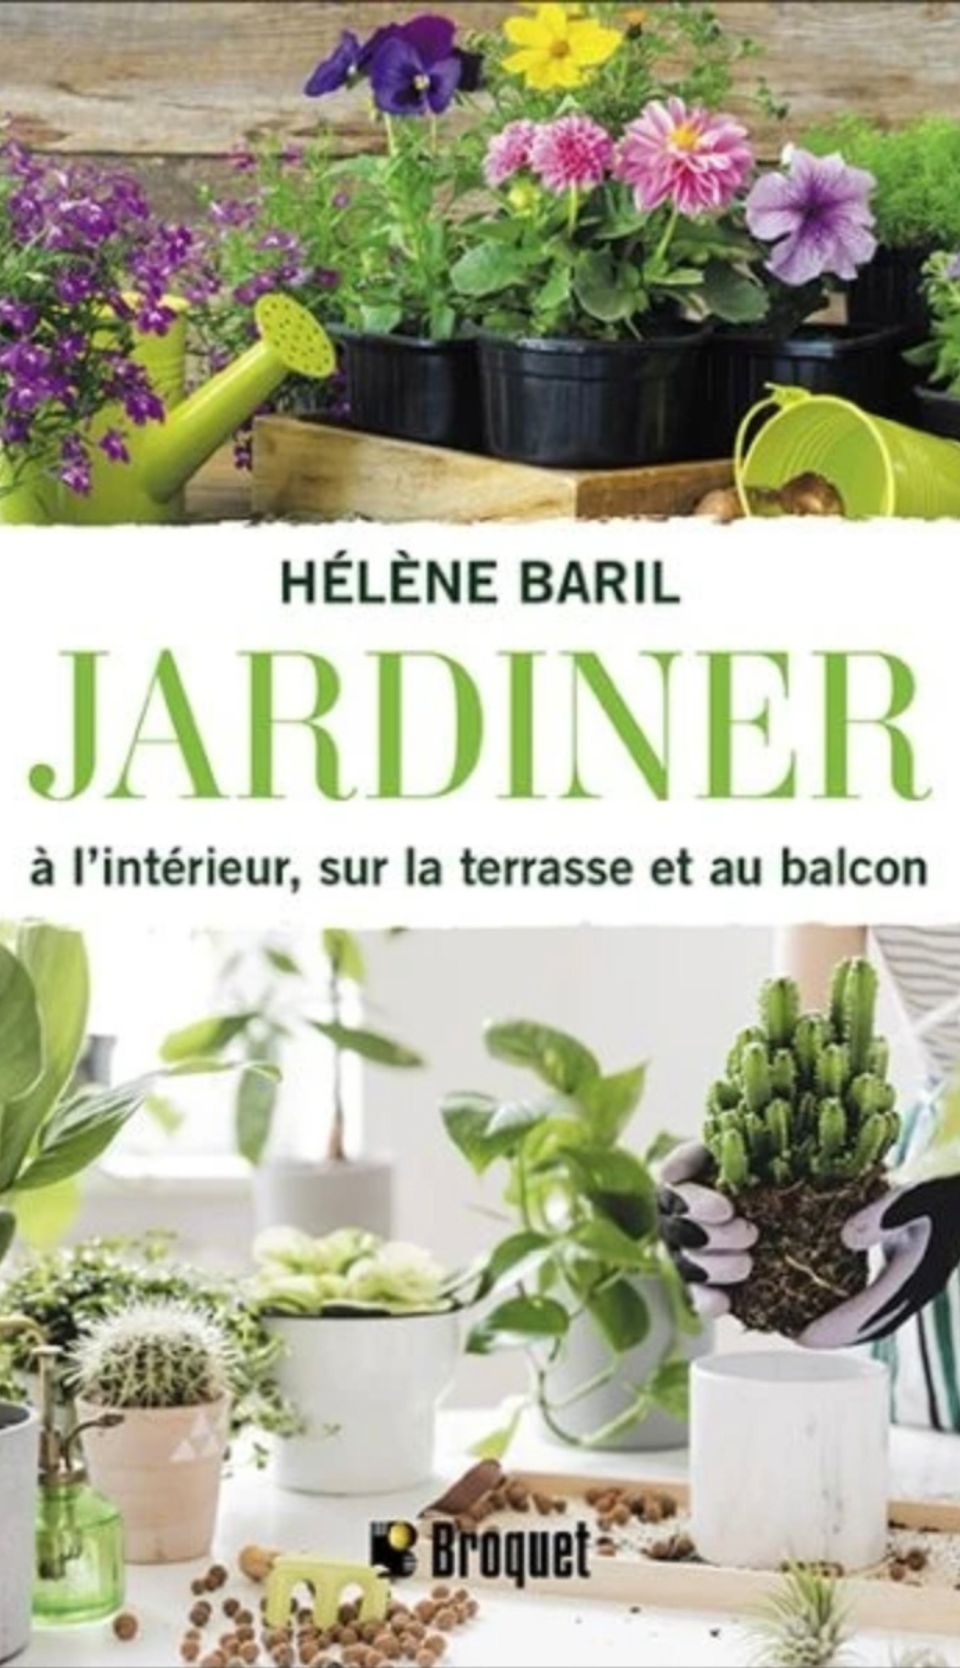 Livres d'horticulture Québec, livre de jardinage